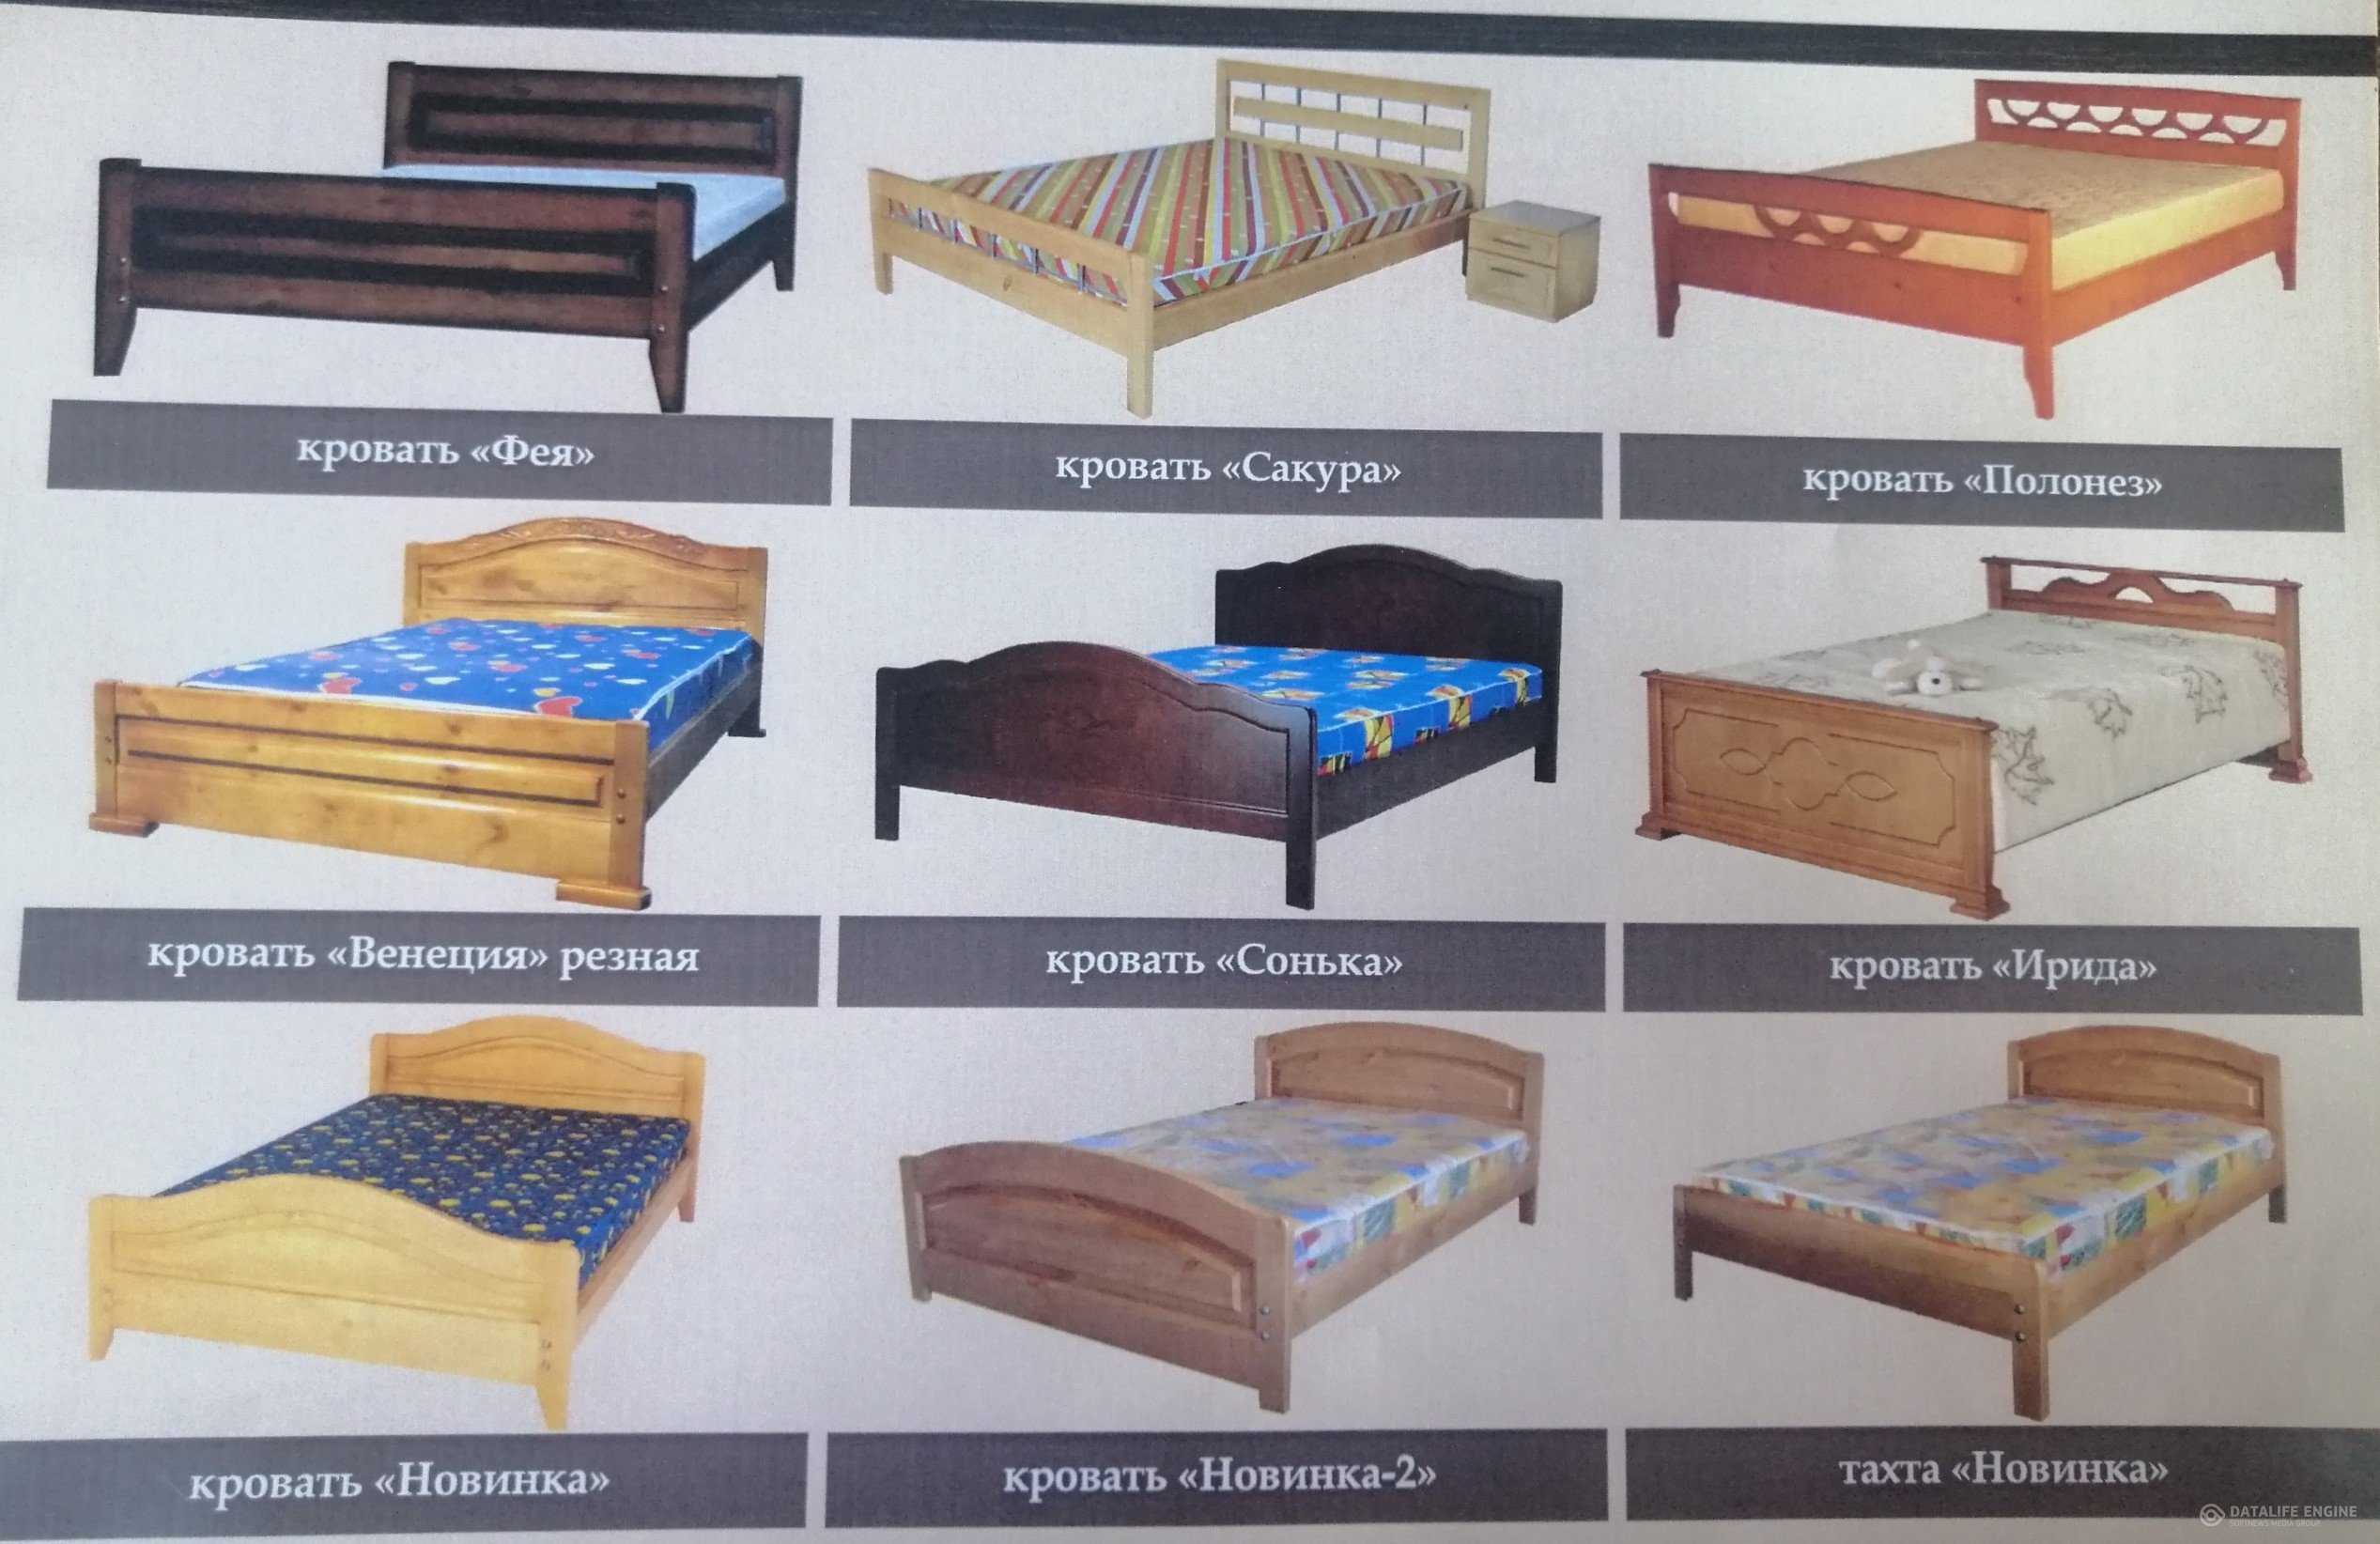 Кровать из массива дерева — натуральная, надежная и долговечная